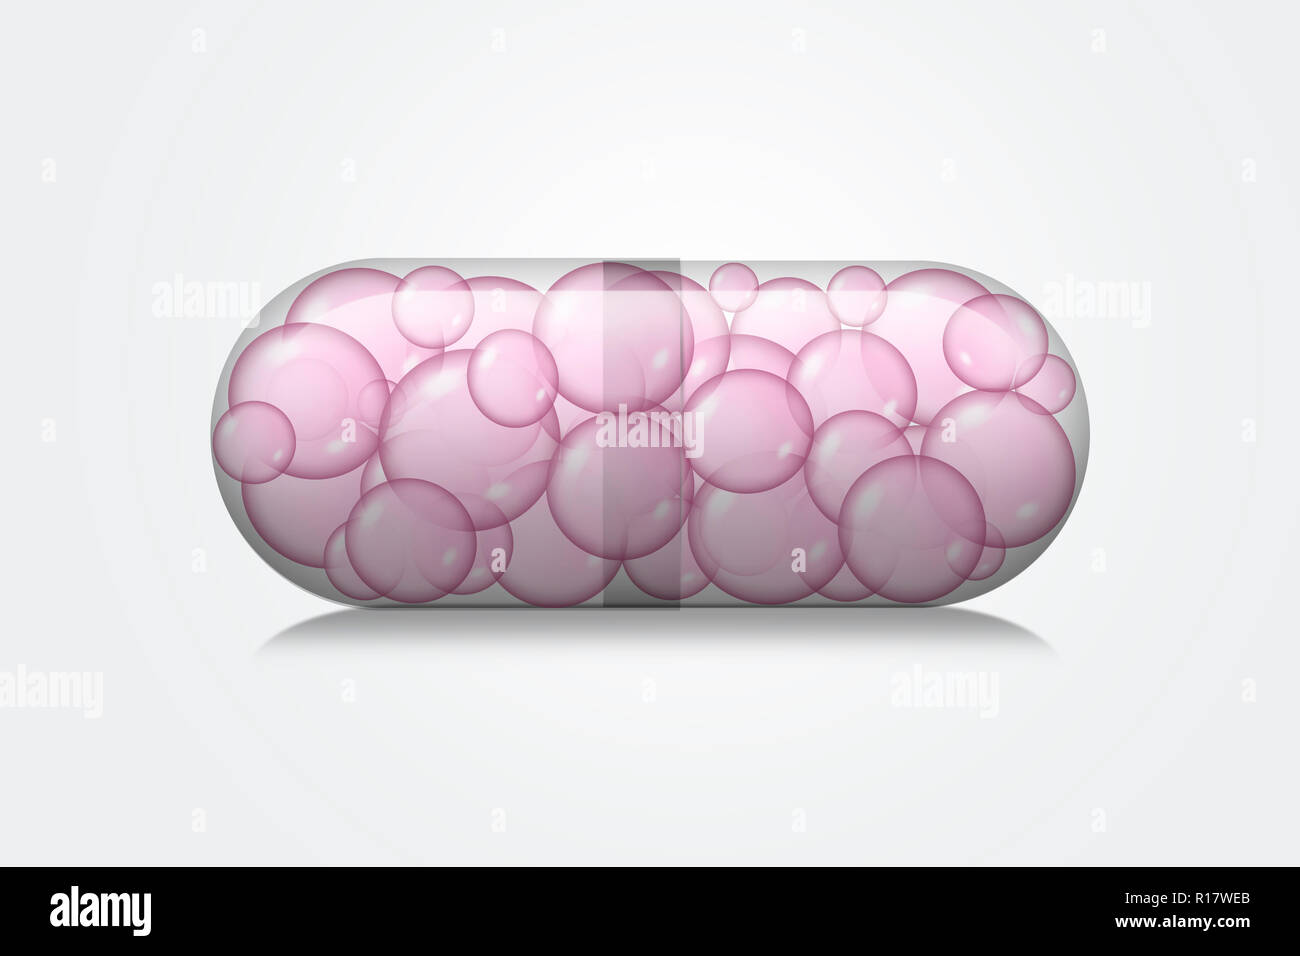 Vista ravvicinata della capsula trasparente contenente bolle rosa su sfondo bianco, immagine digitale Foto Stock